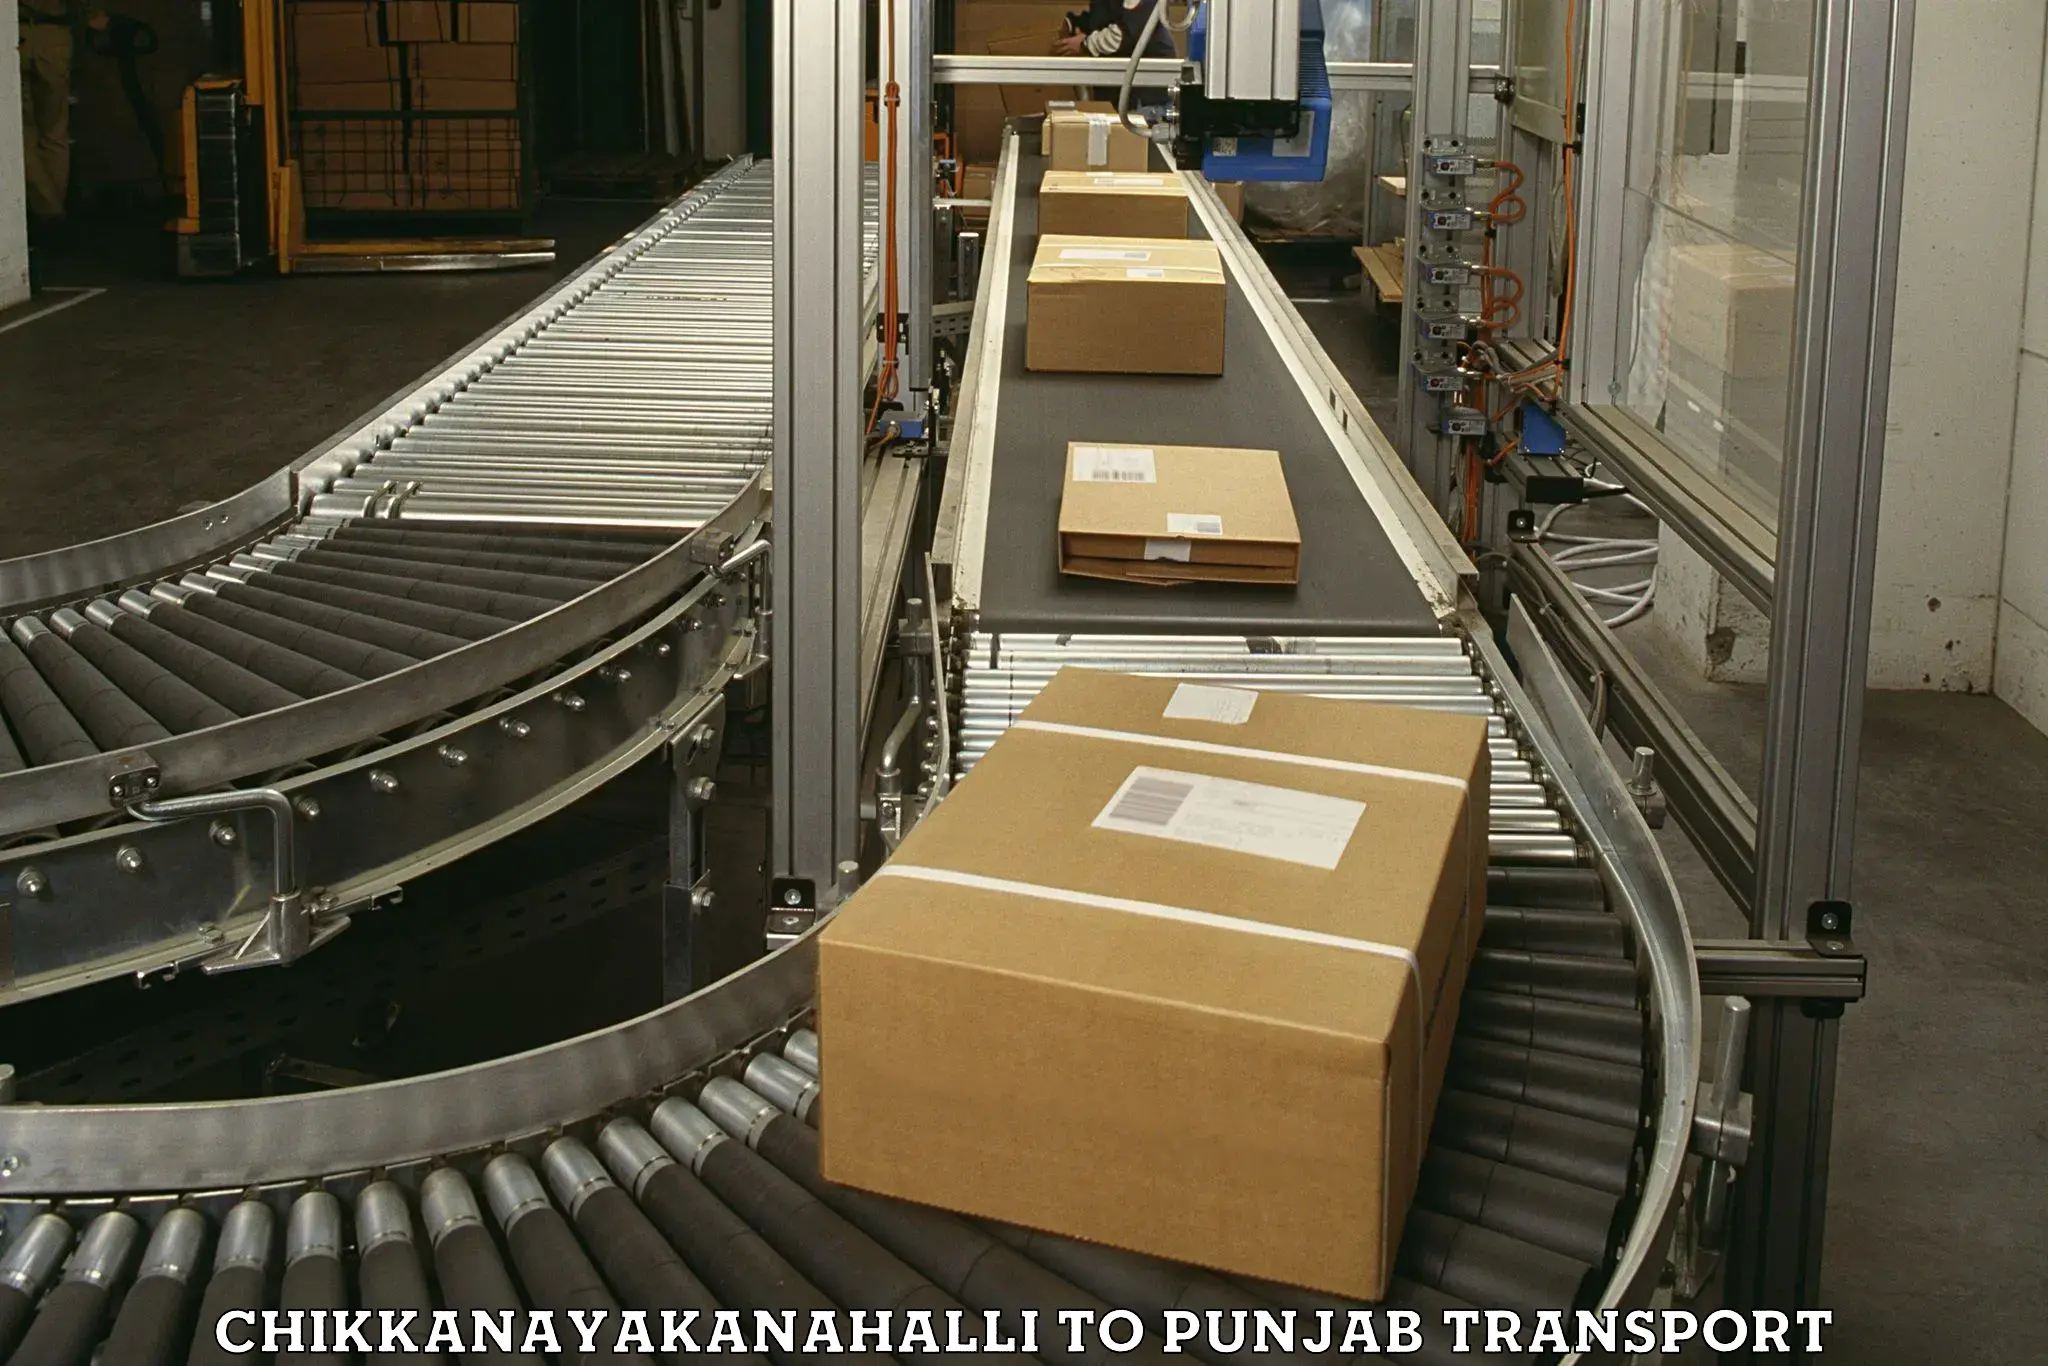 Container transport service Chikkanayakanahalli to Malerkotla